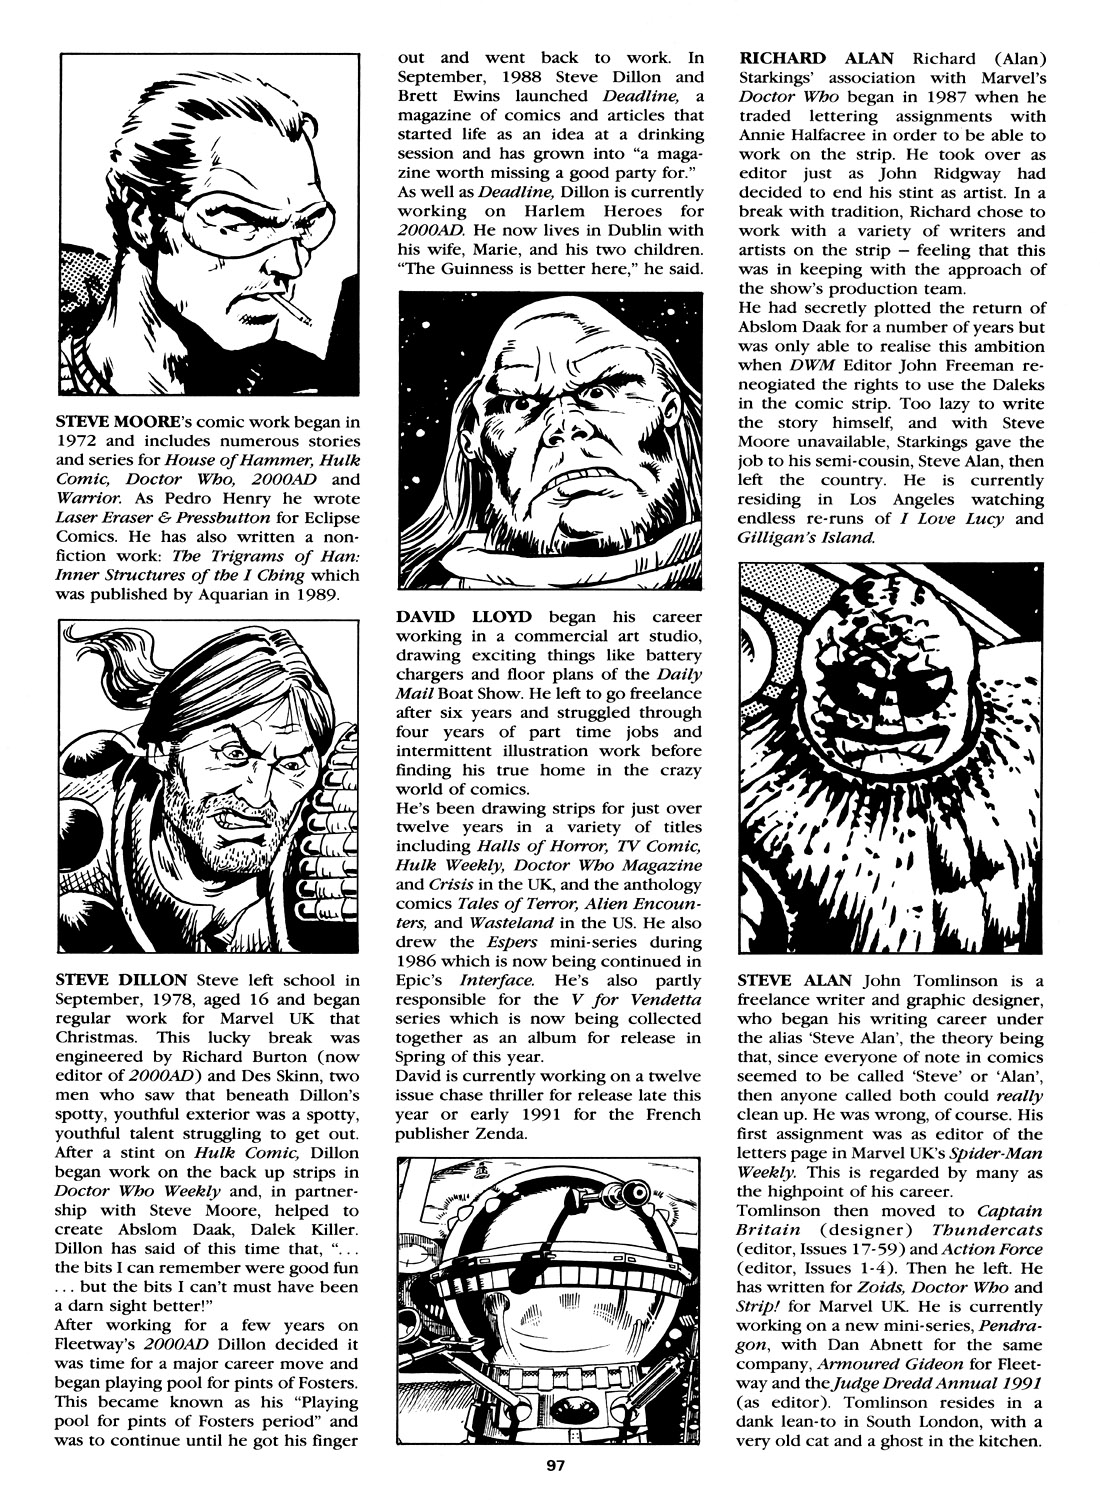 Read online Marvel Graphic Novel comic -  Issue #4 Abslom Daak, Dalek Killer - 91